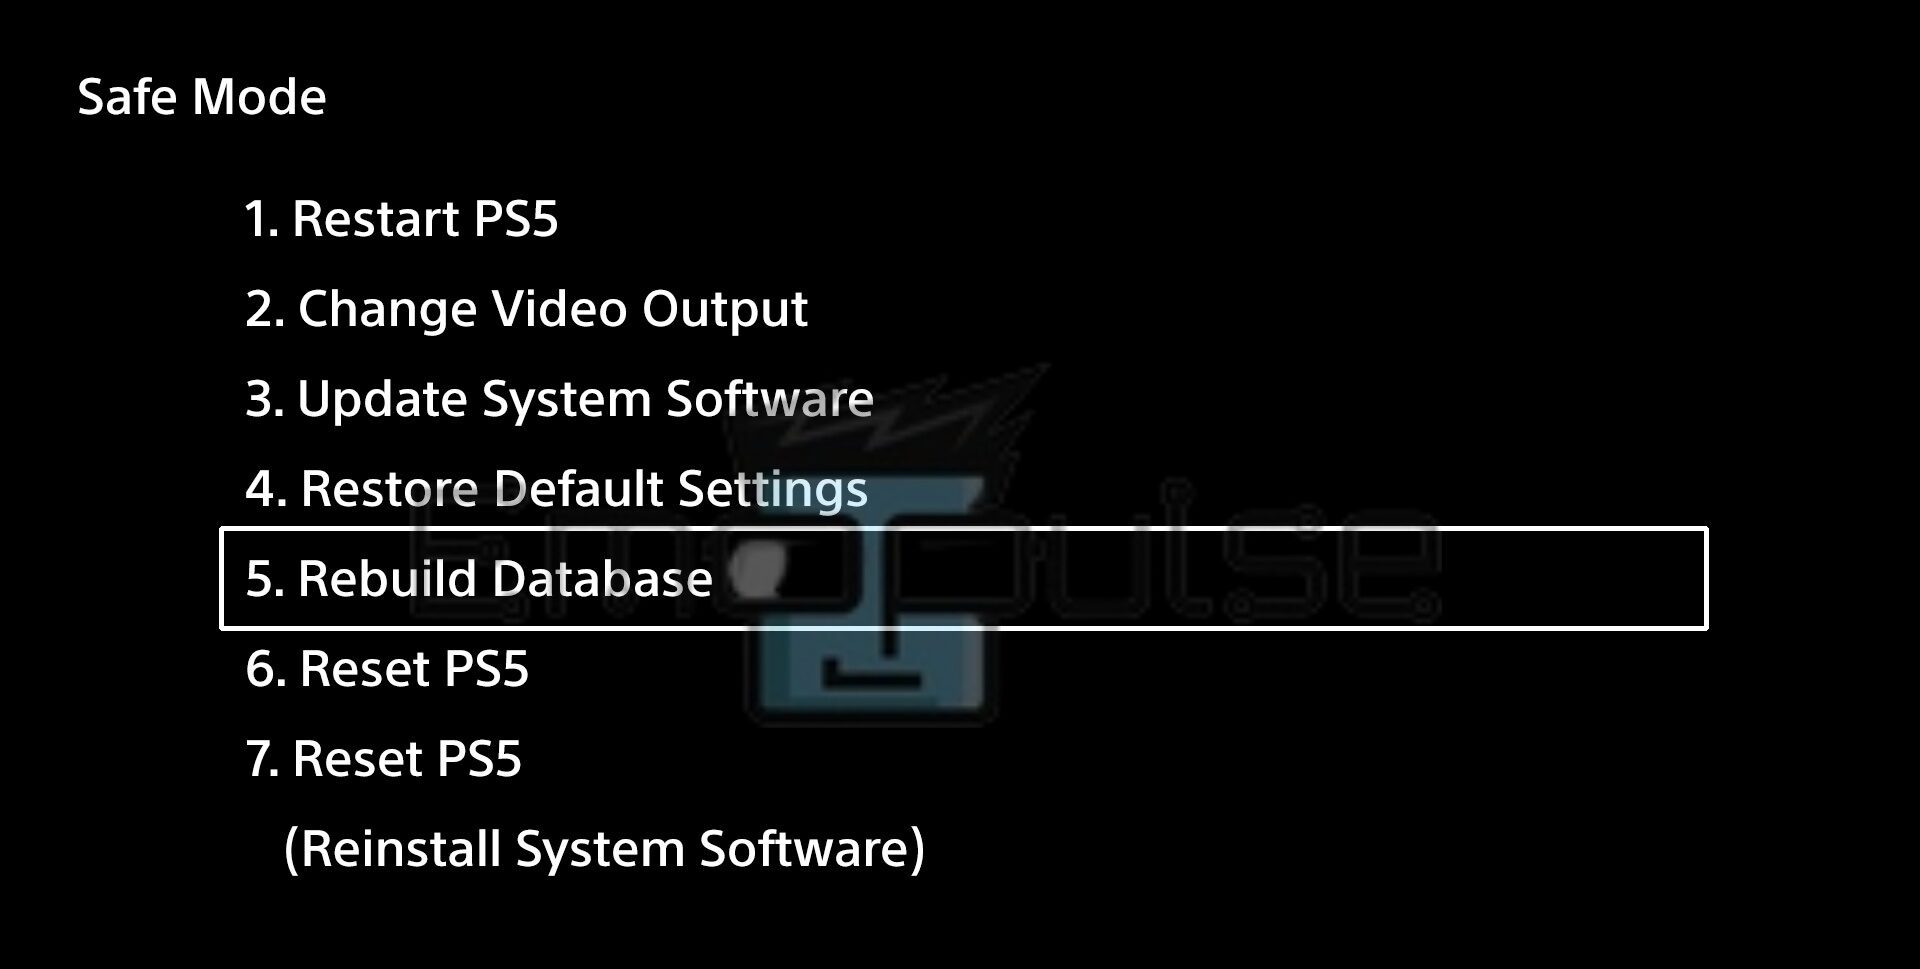 Rebuilding Database in PS5 Safe Mode